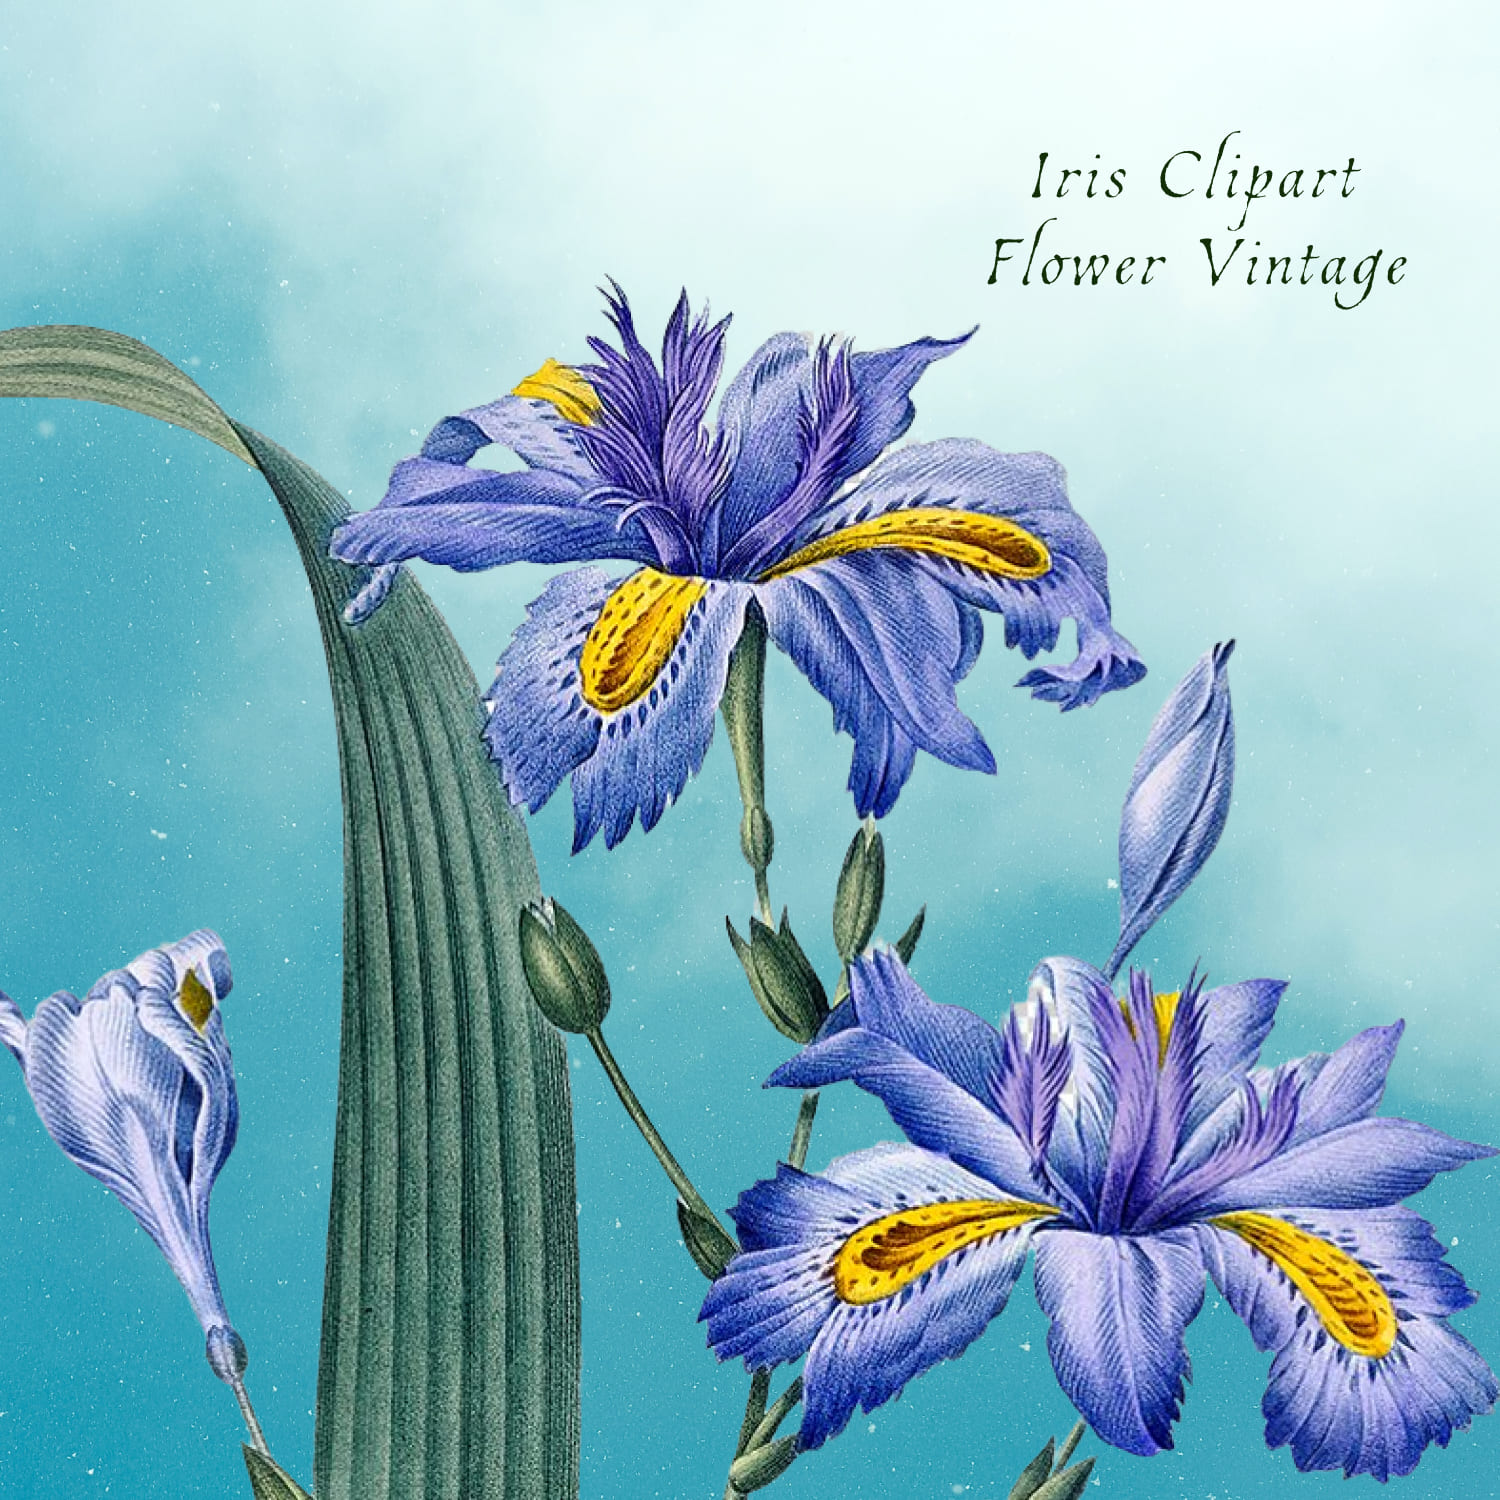 Iris Clipart Flower Vintage Blue Purple cover image.